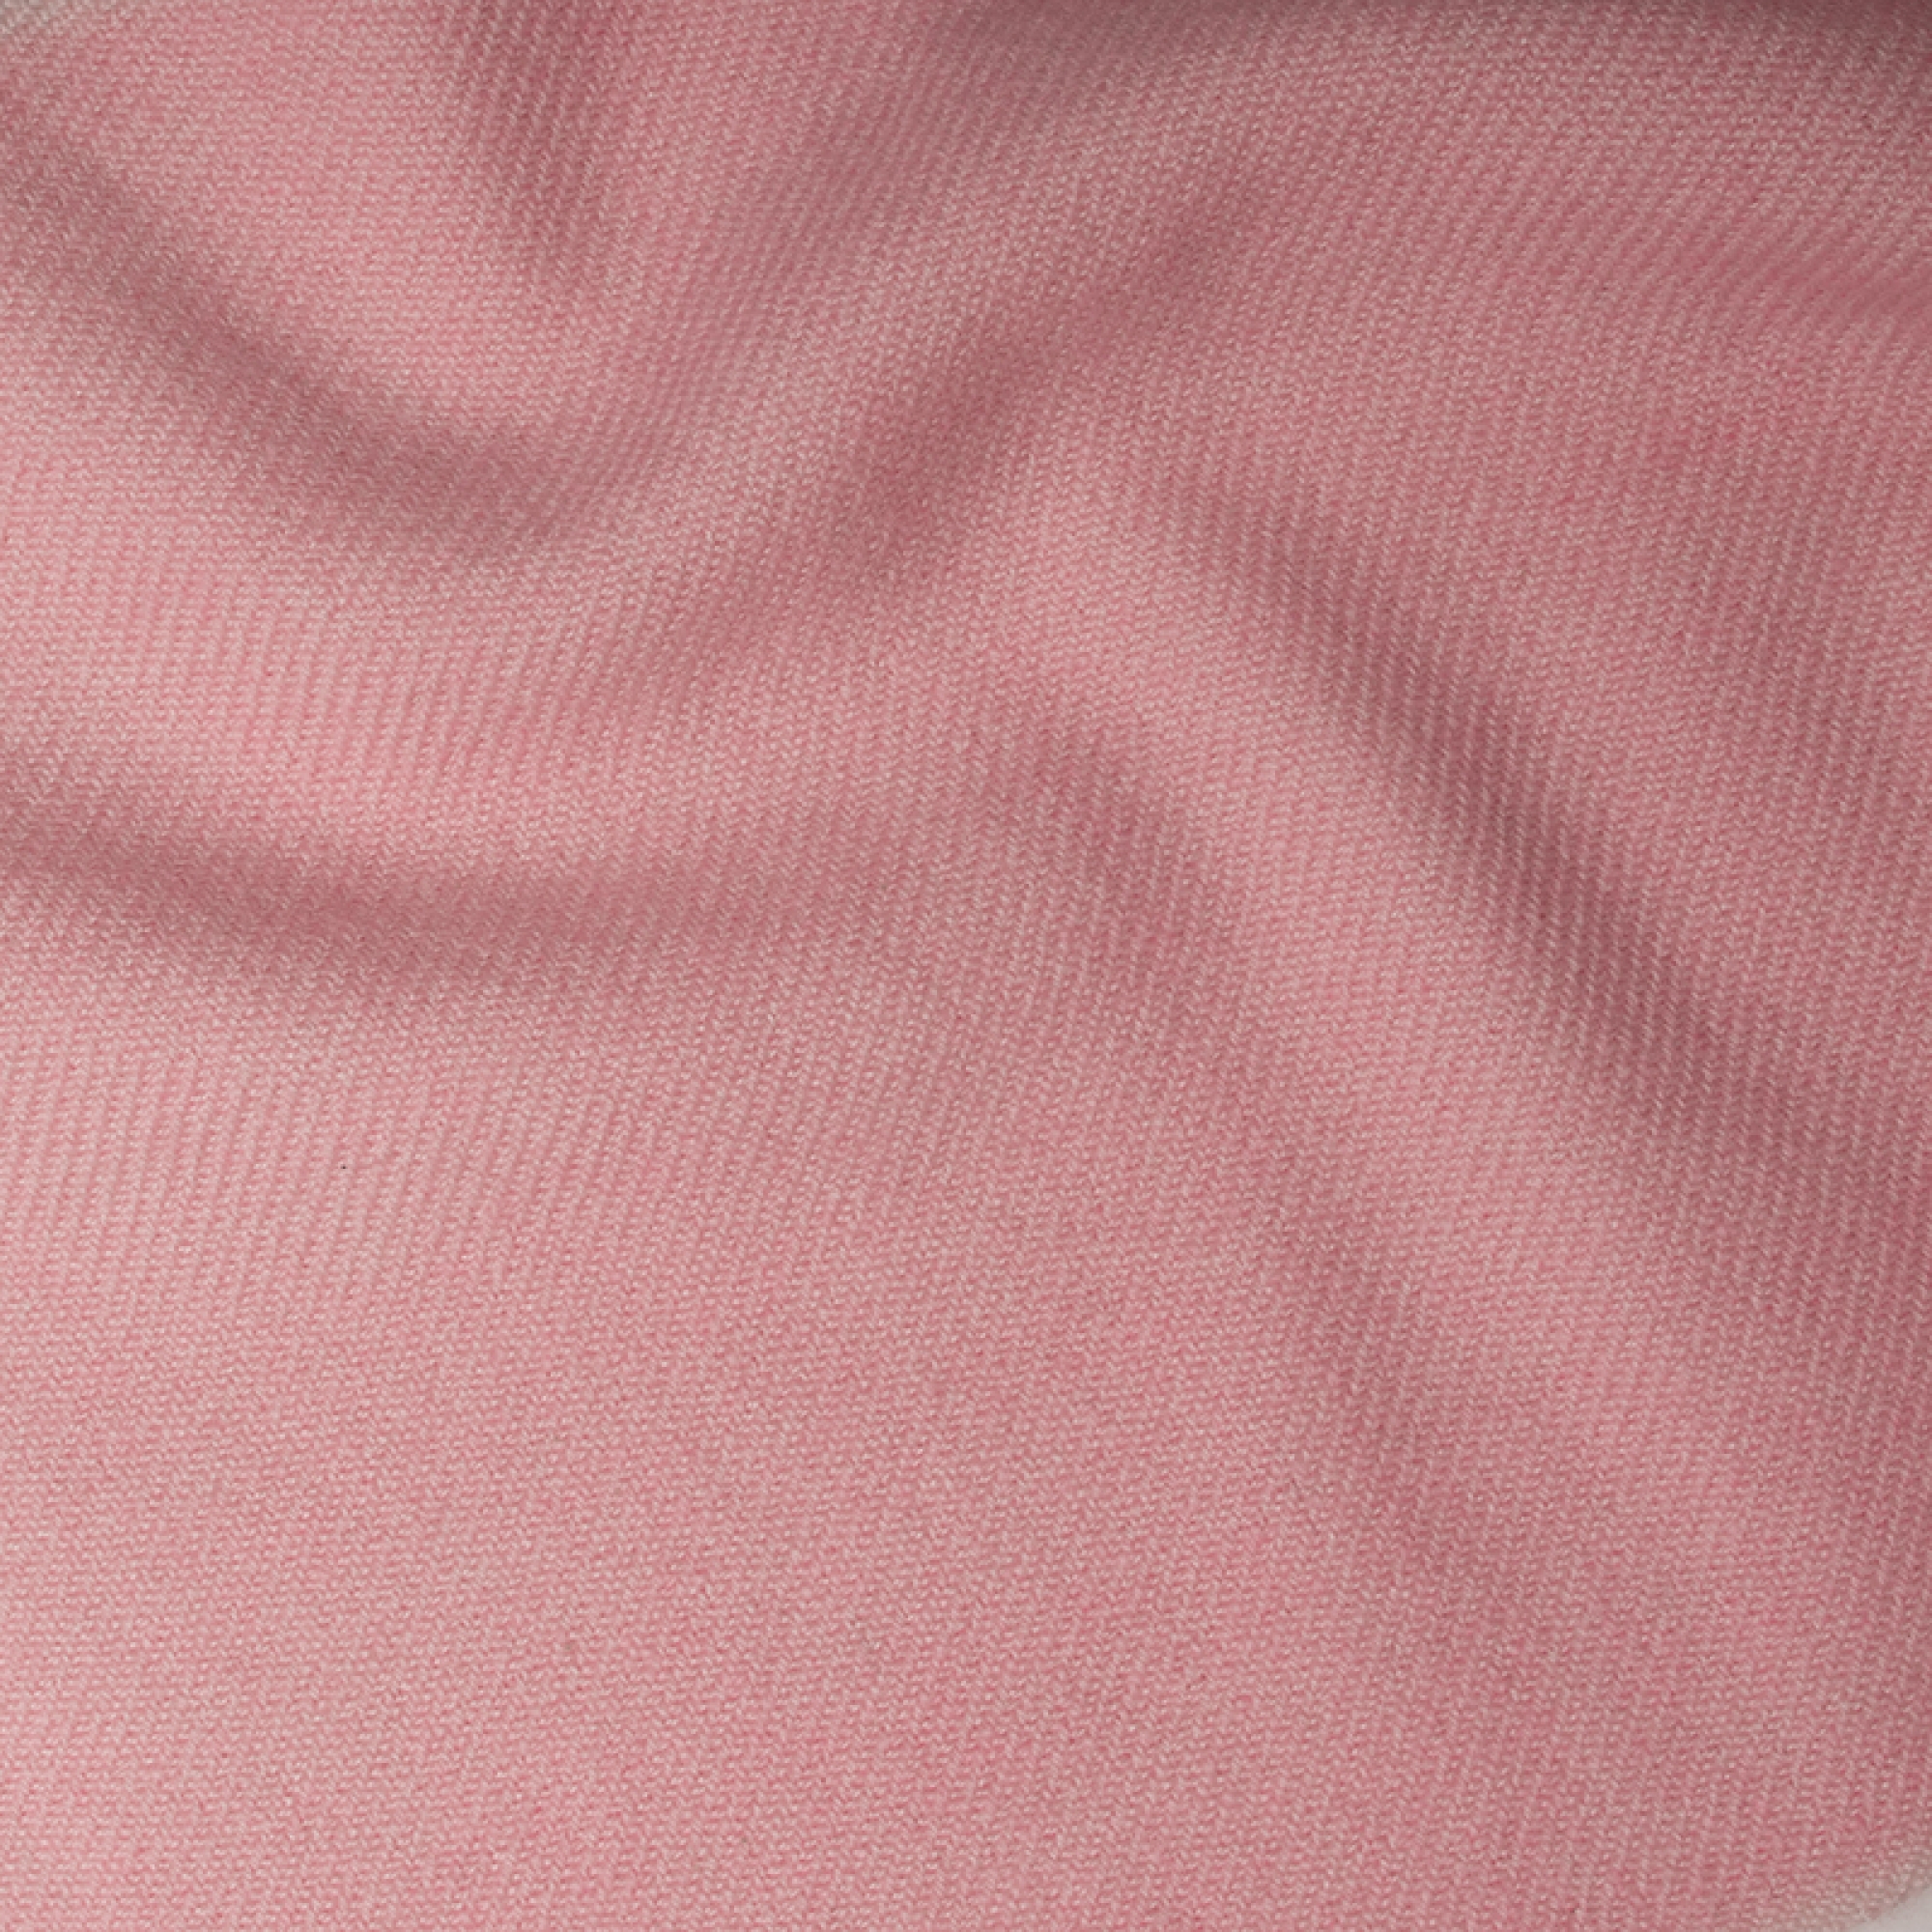 Cashmere accessori toodoo plain m 180 x 220 rosa confetto 180 x 220 cm